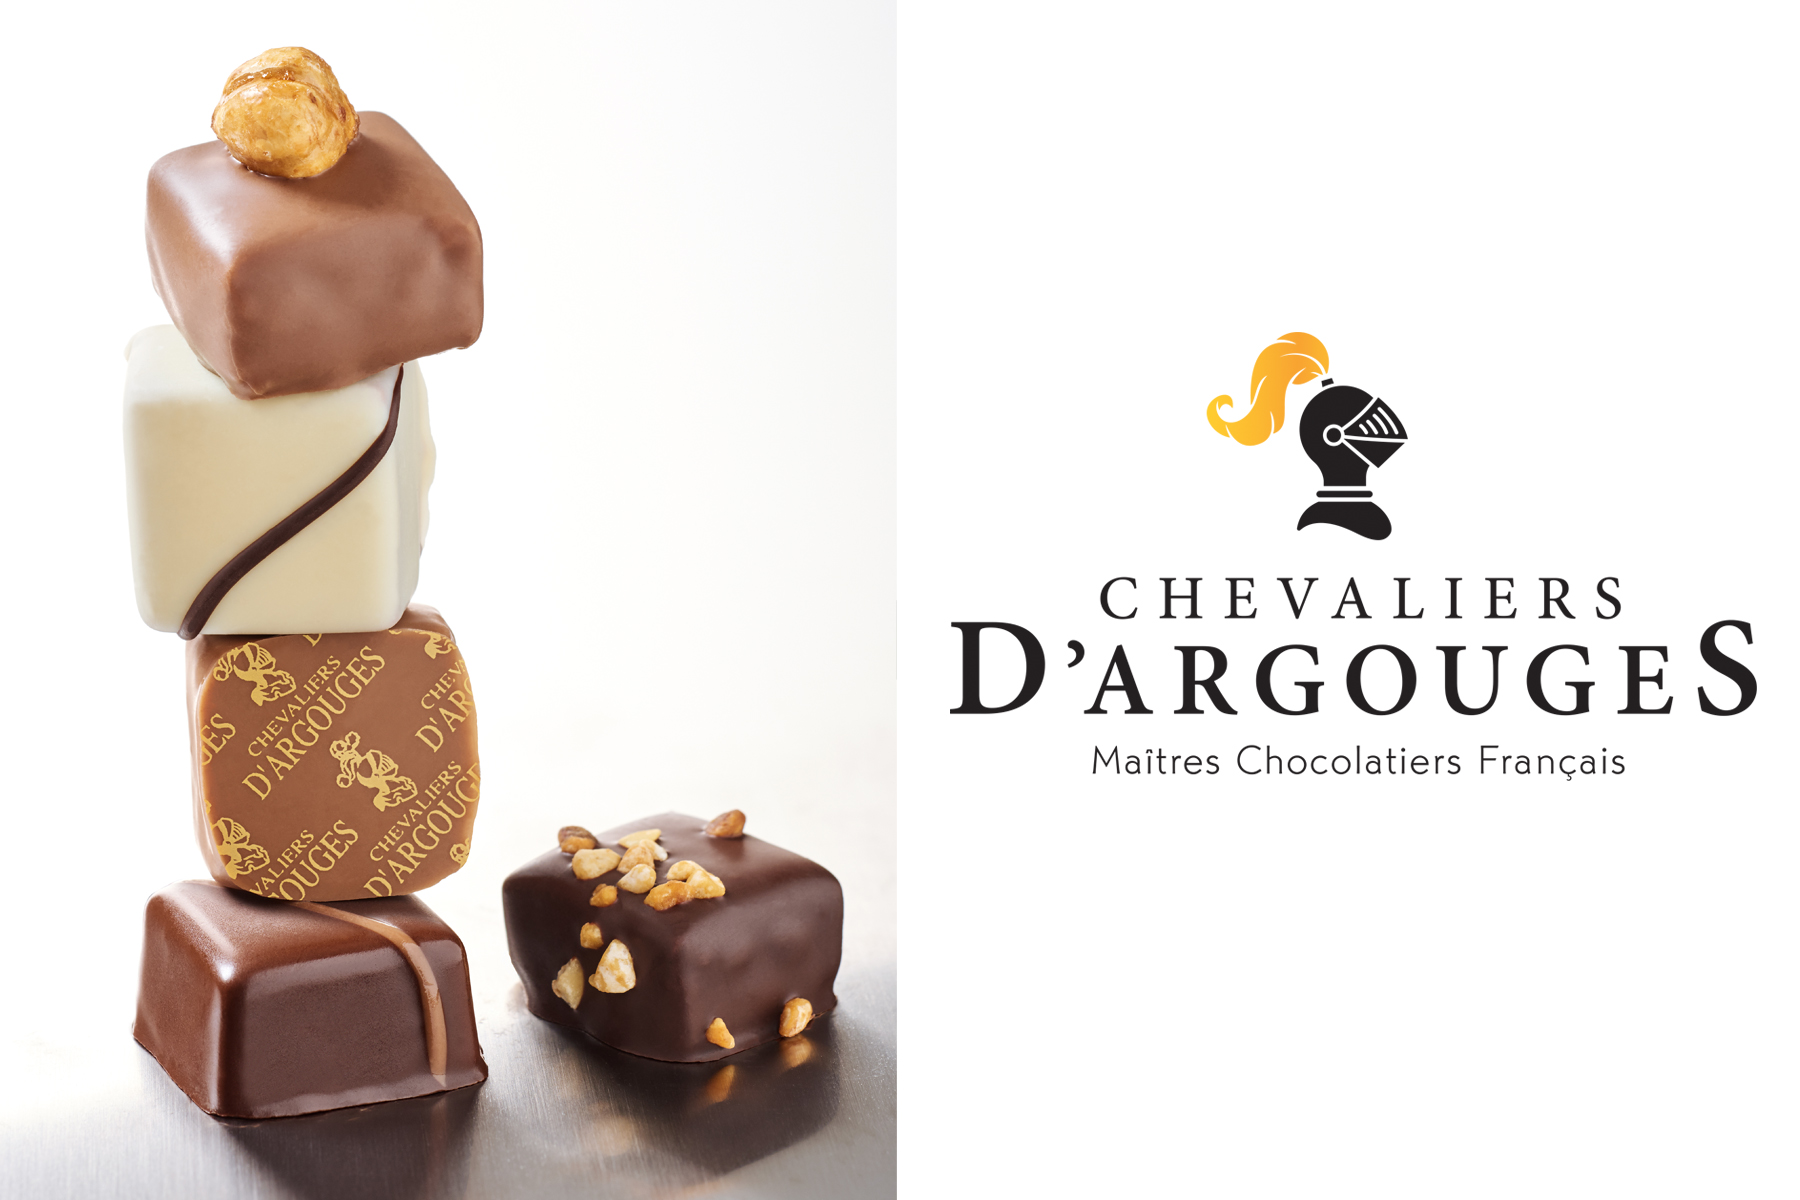 CHEVALIERS D'ARGOUGES Maîtres Chocolatiers Français